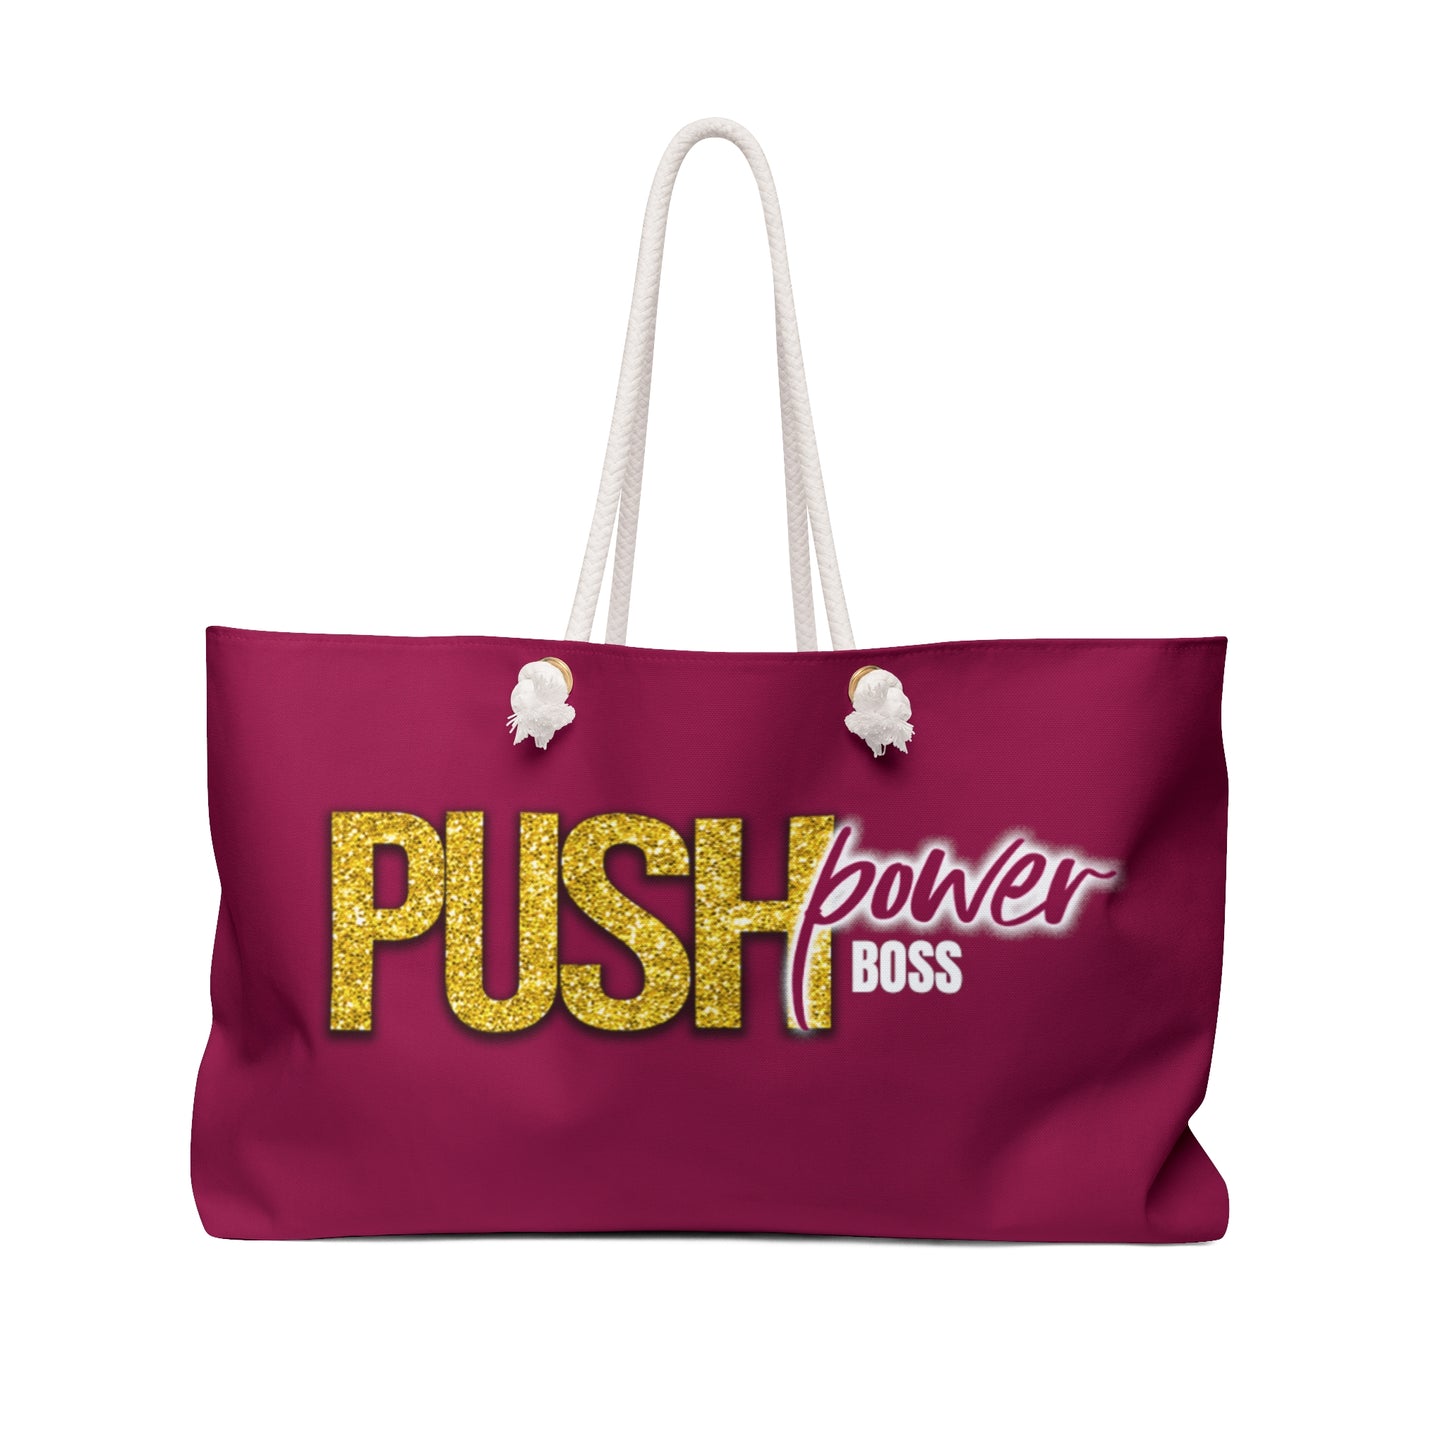 Push Power Boss Weekender Bag (Wine Color)